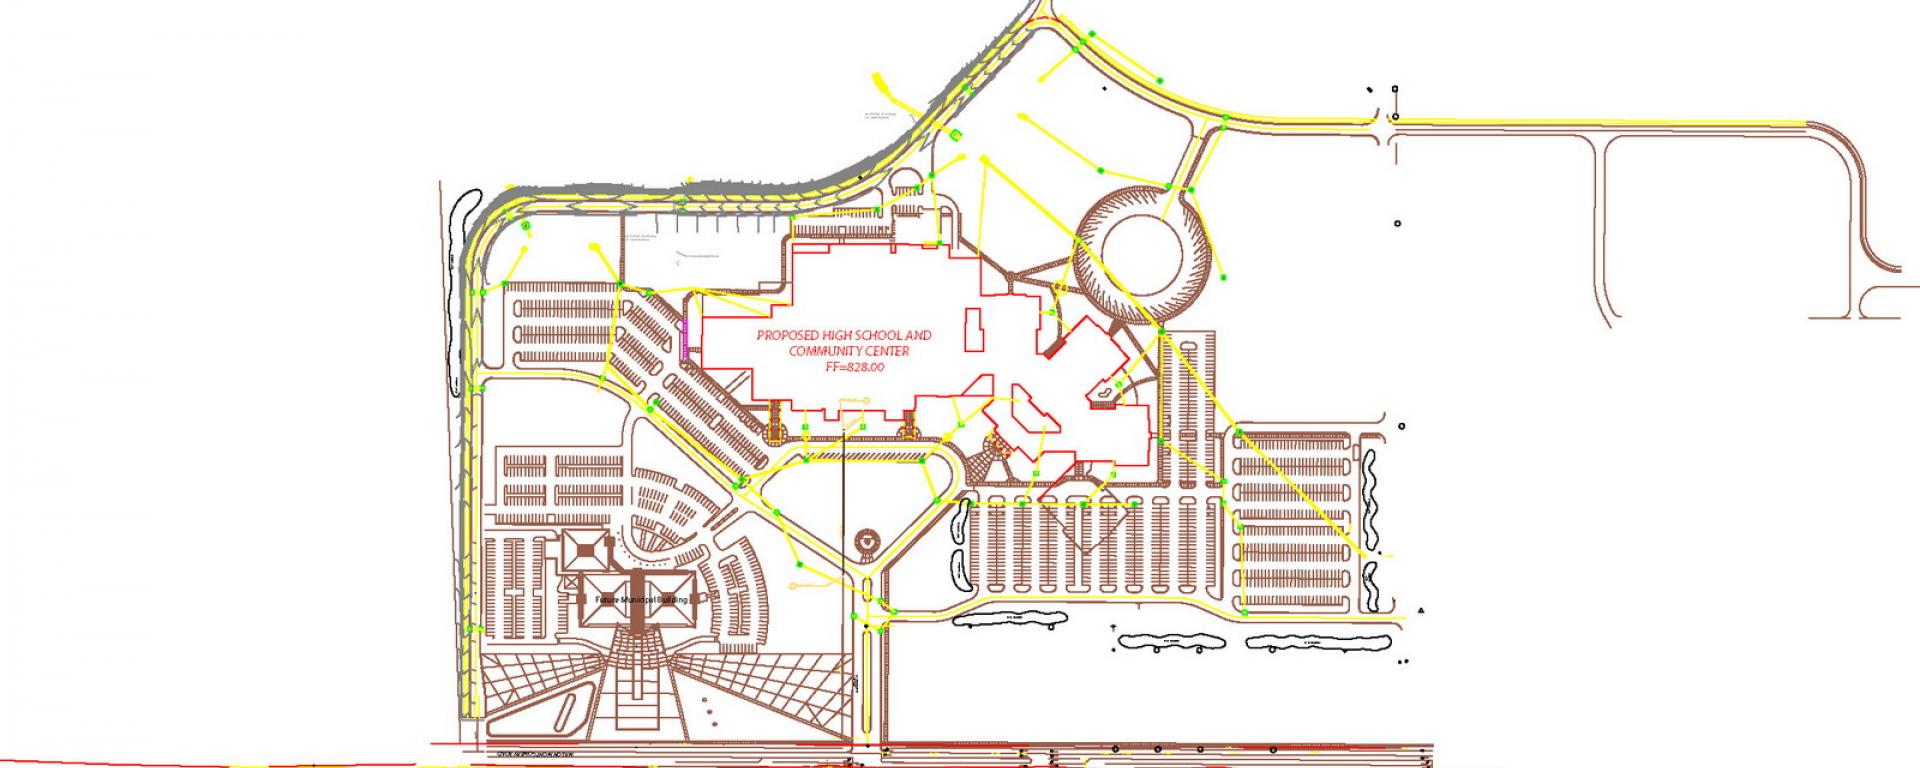 Site plan rendering